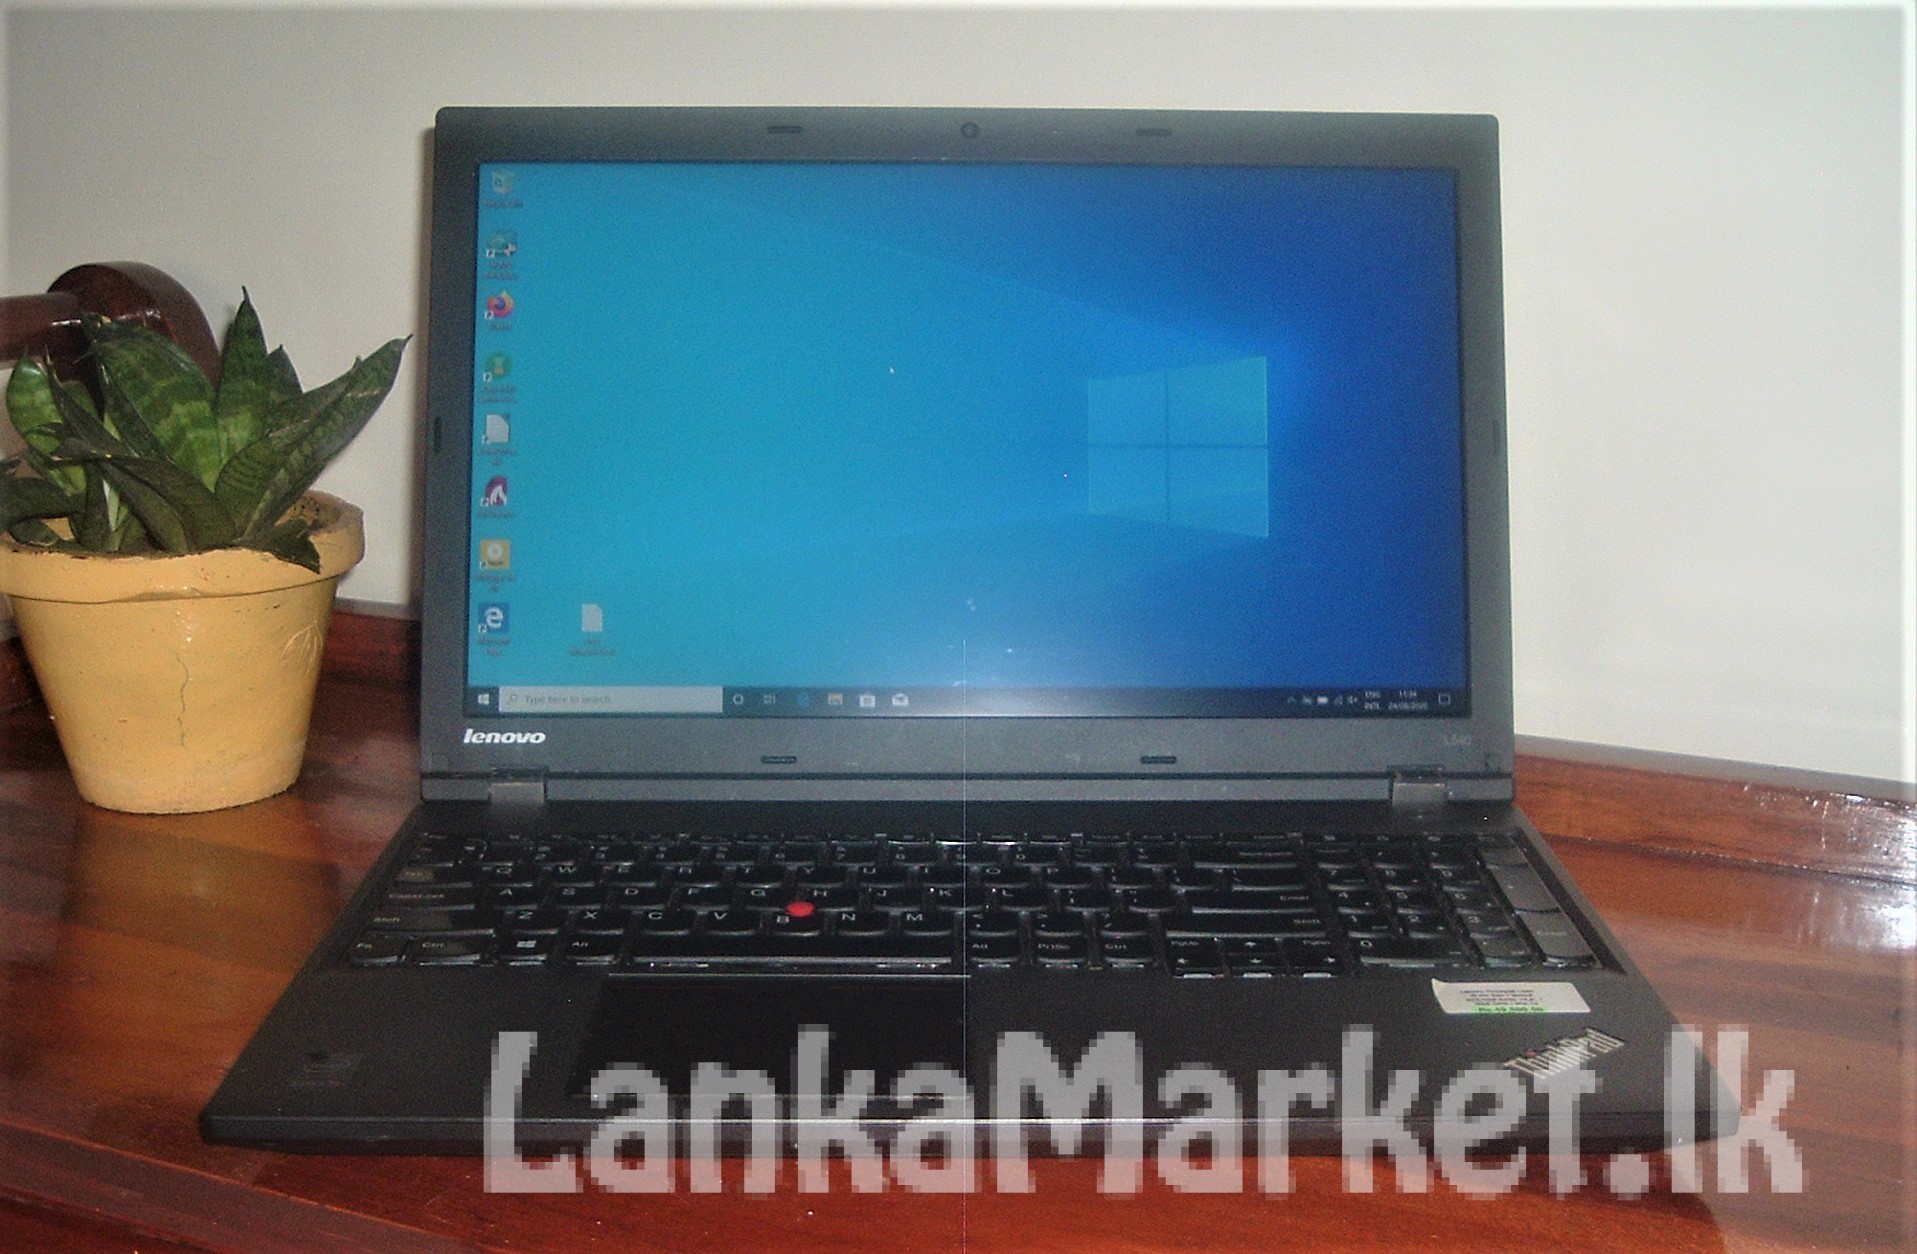 Lenovo ThinkPad L540 i5-4300M 2.6Ghz / 4 GB RAM / 500 GB HDD – with warranty